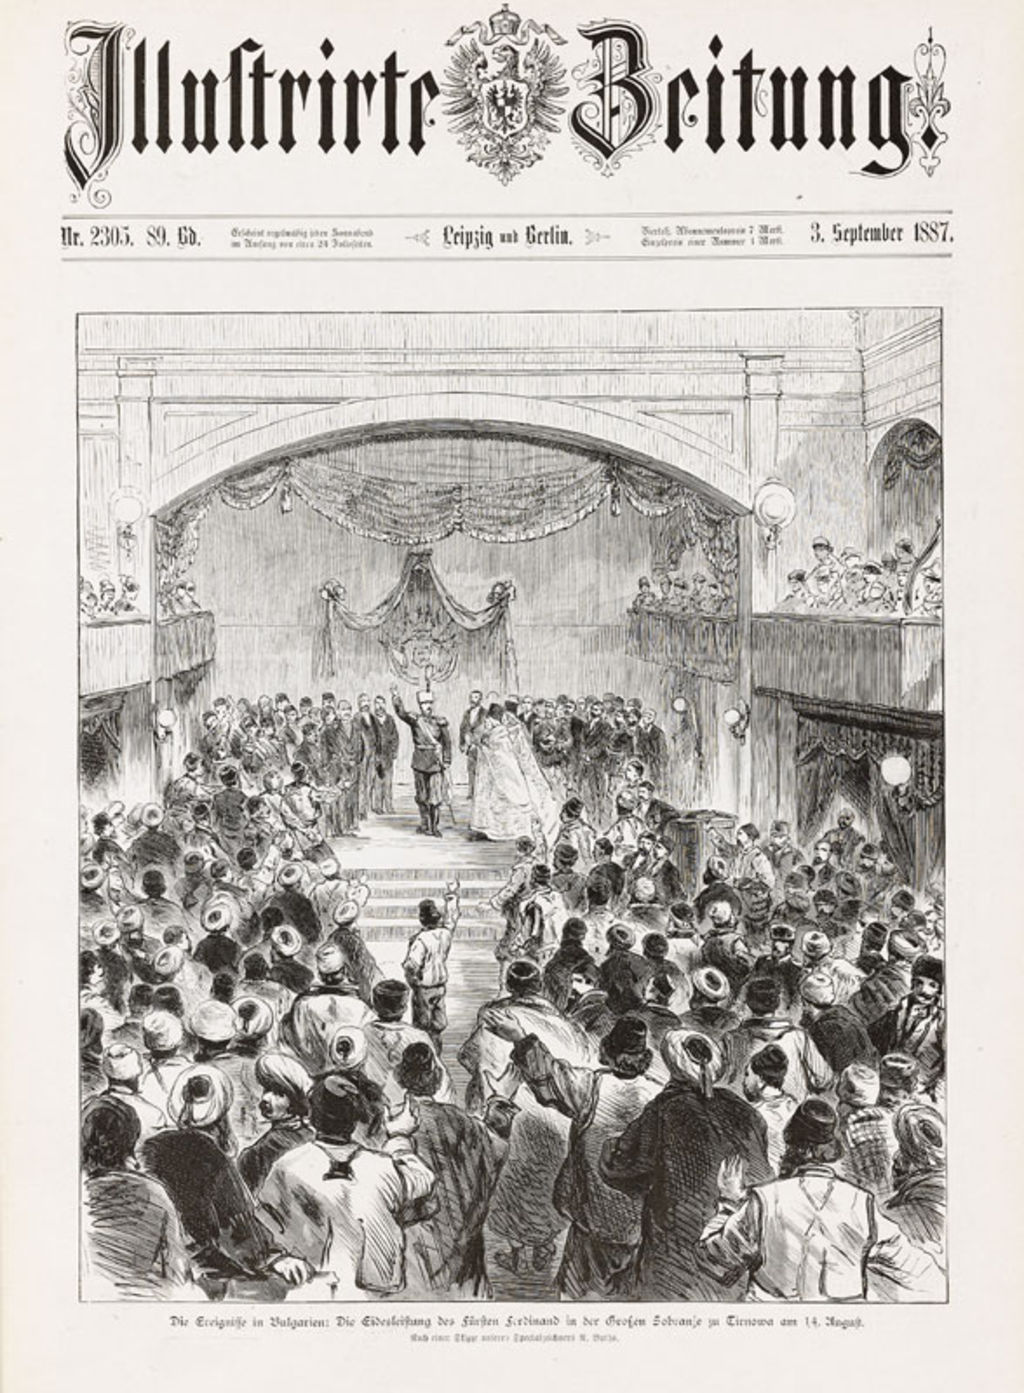 Zeitung: Illustrirte Zeitung zur Vereidigung Ferdinands I. von Bulgarien, 1887